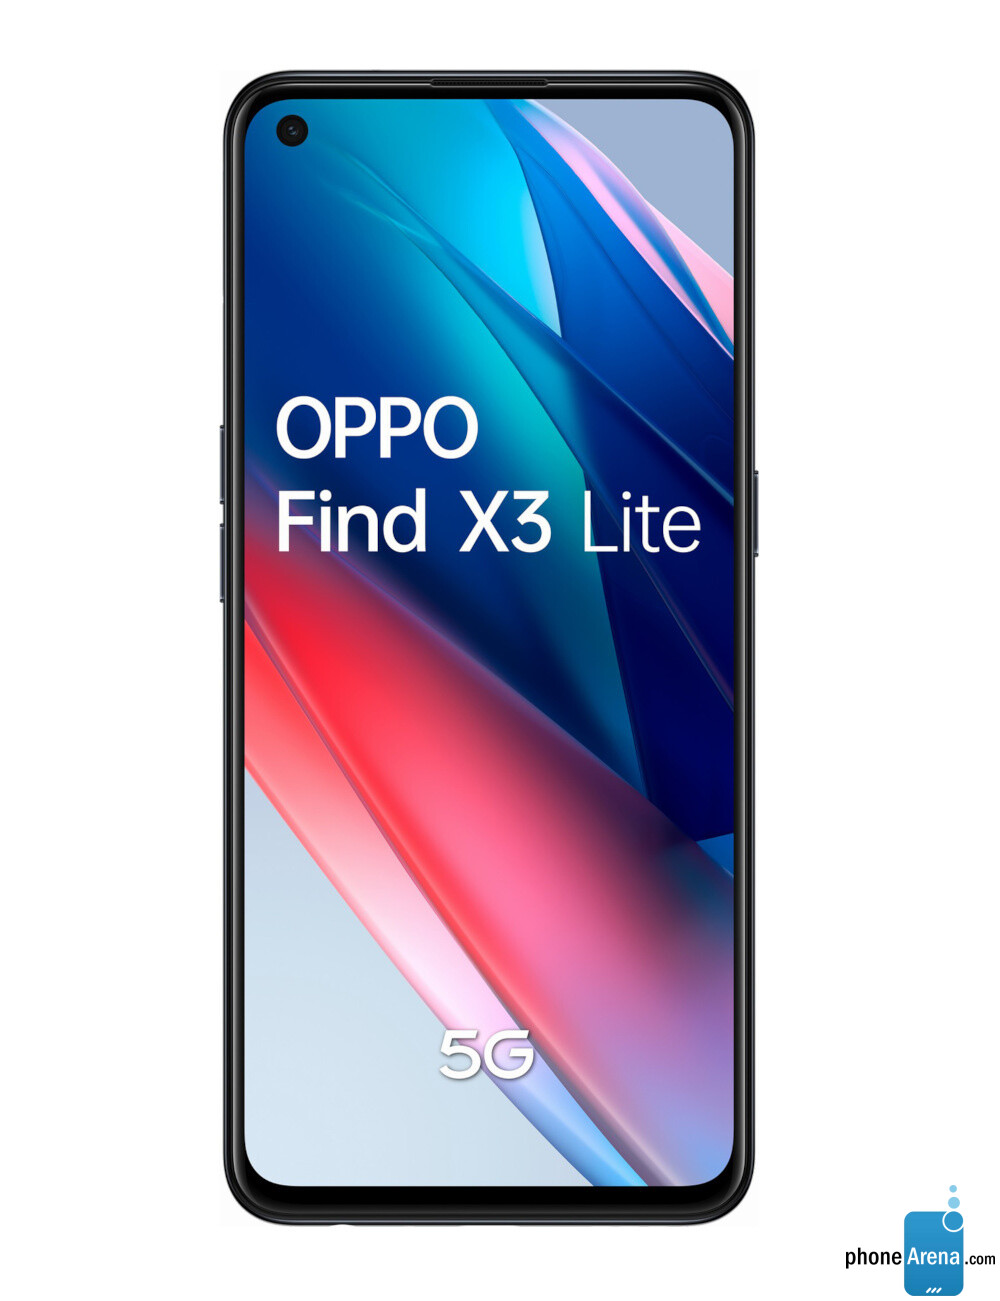 OPPO Find X3 Lite